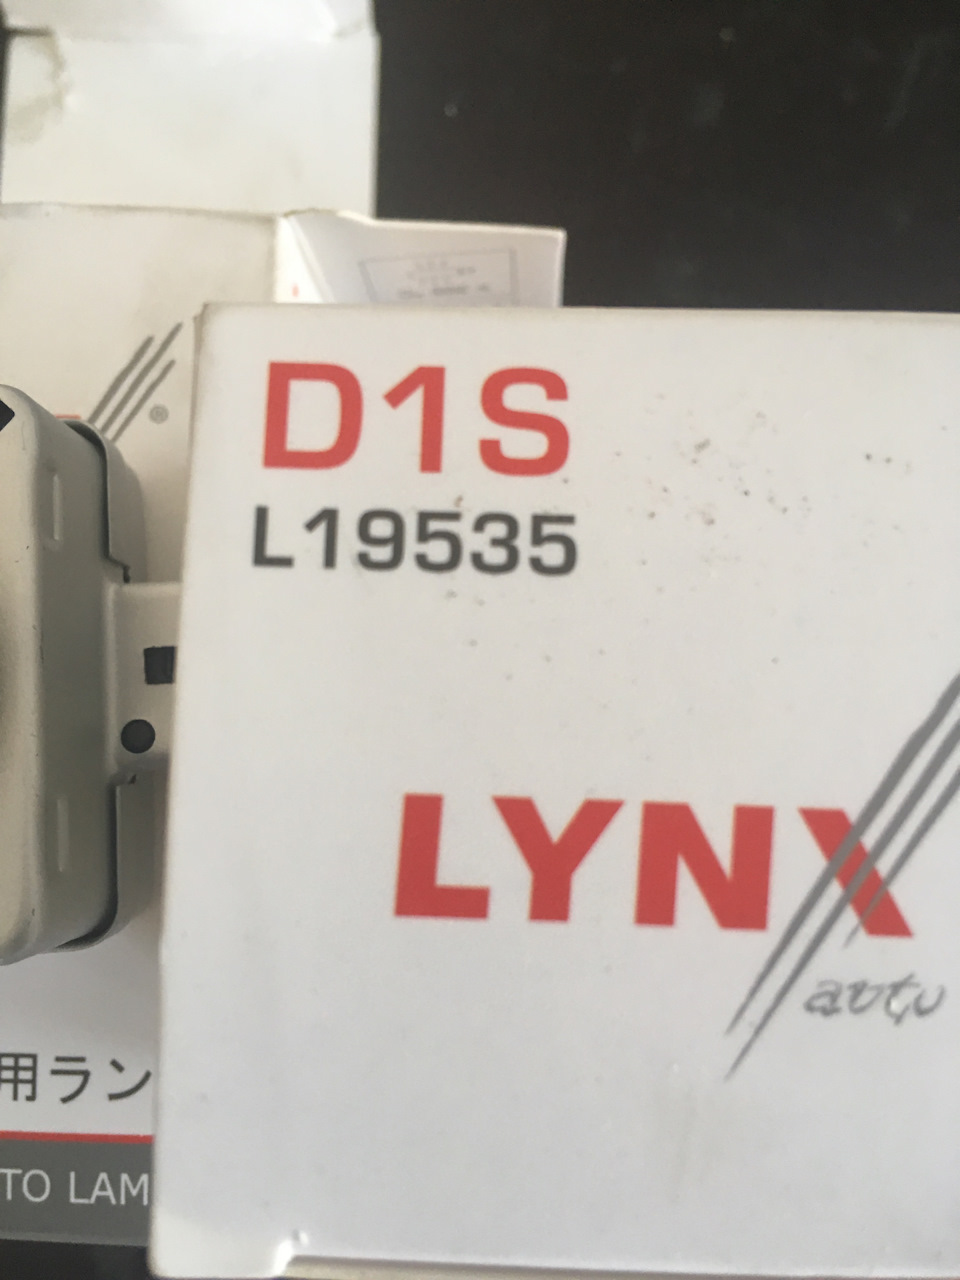 D1s лампа Линкс. Лампа d1s Lynx артикул. L19535 лампа газоразрядная Lynx гарантия. L19535. Производитель lynx отзывы